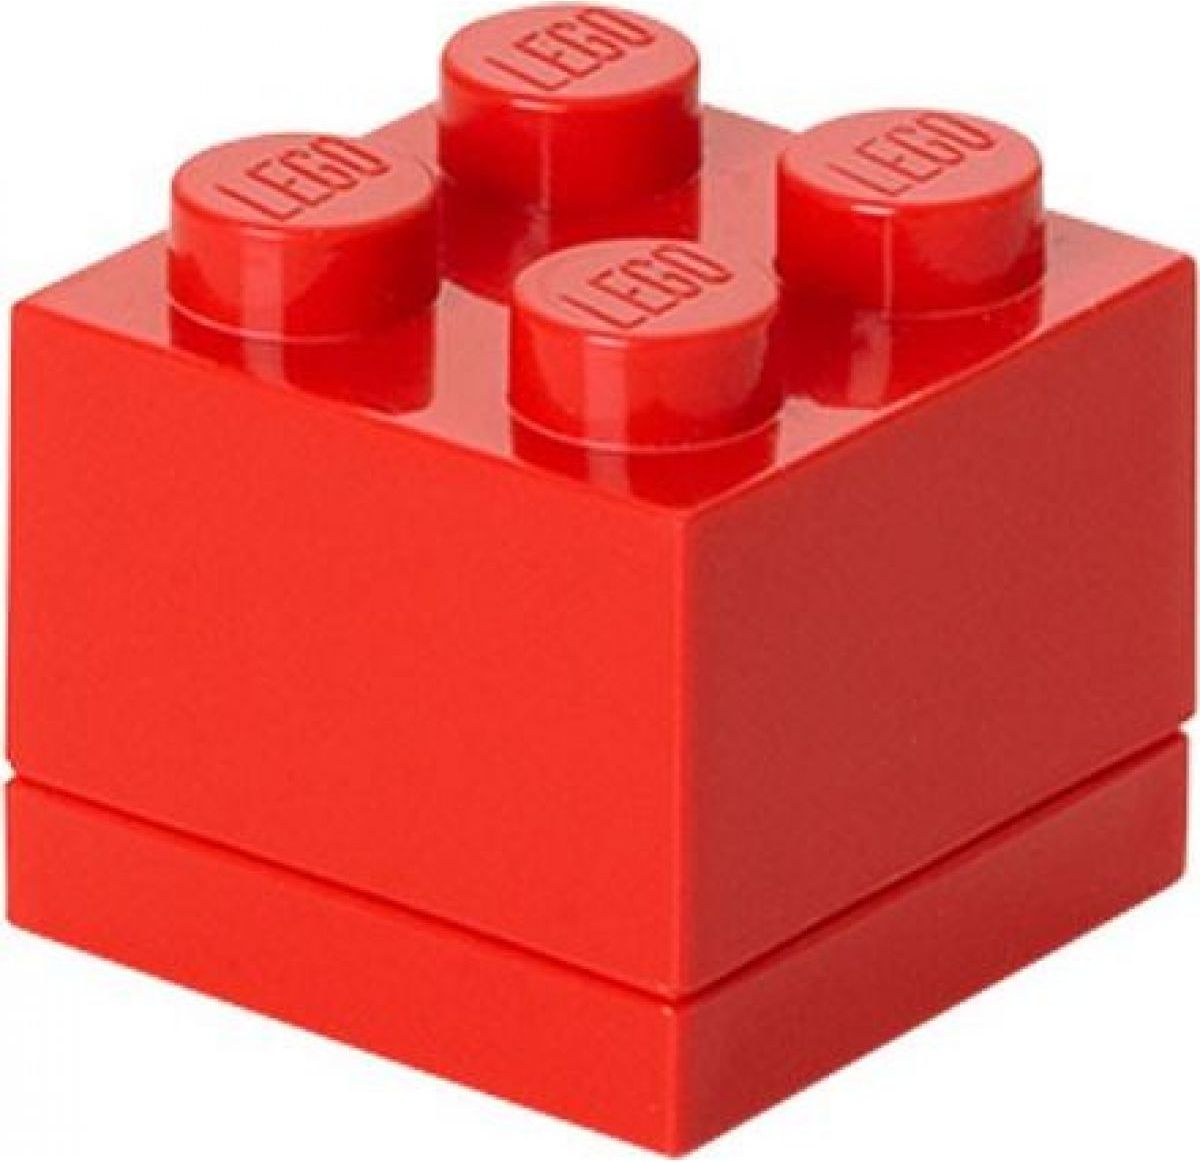 LEGO Mini Box 4,6 x 4,6 x 4,3 cm Červená - obrázek 1